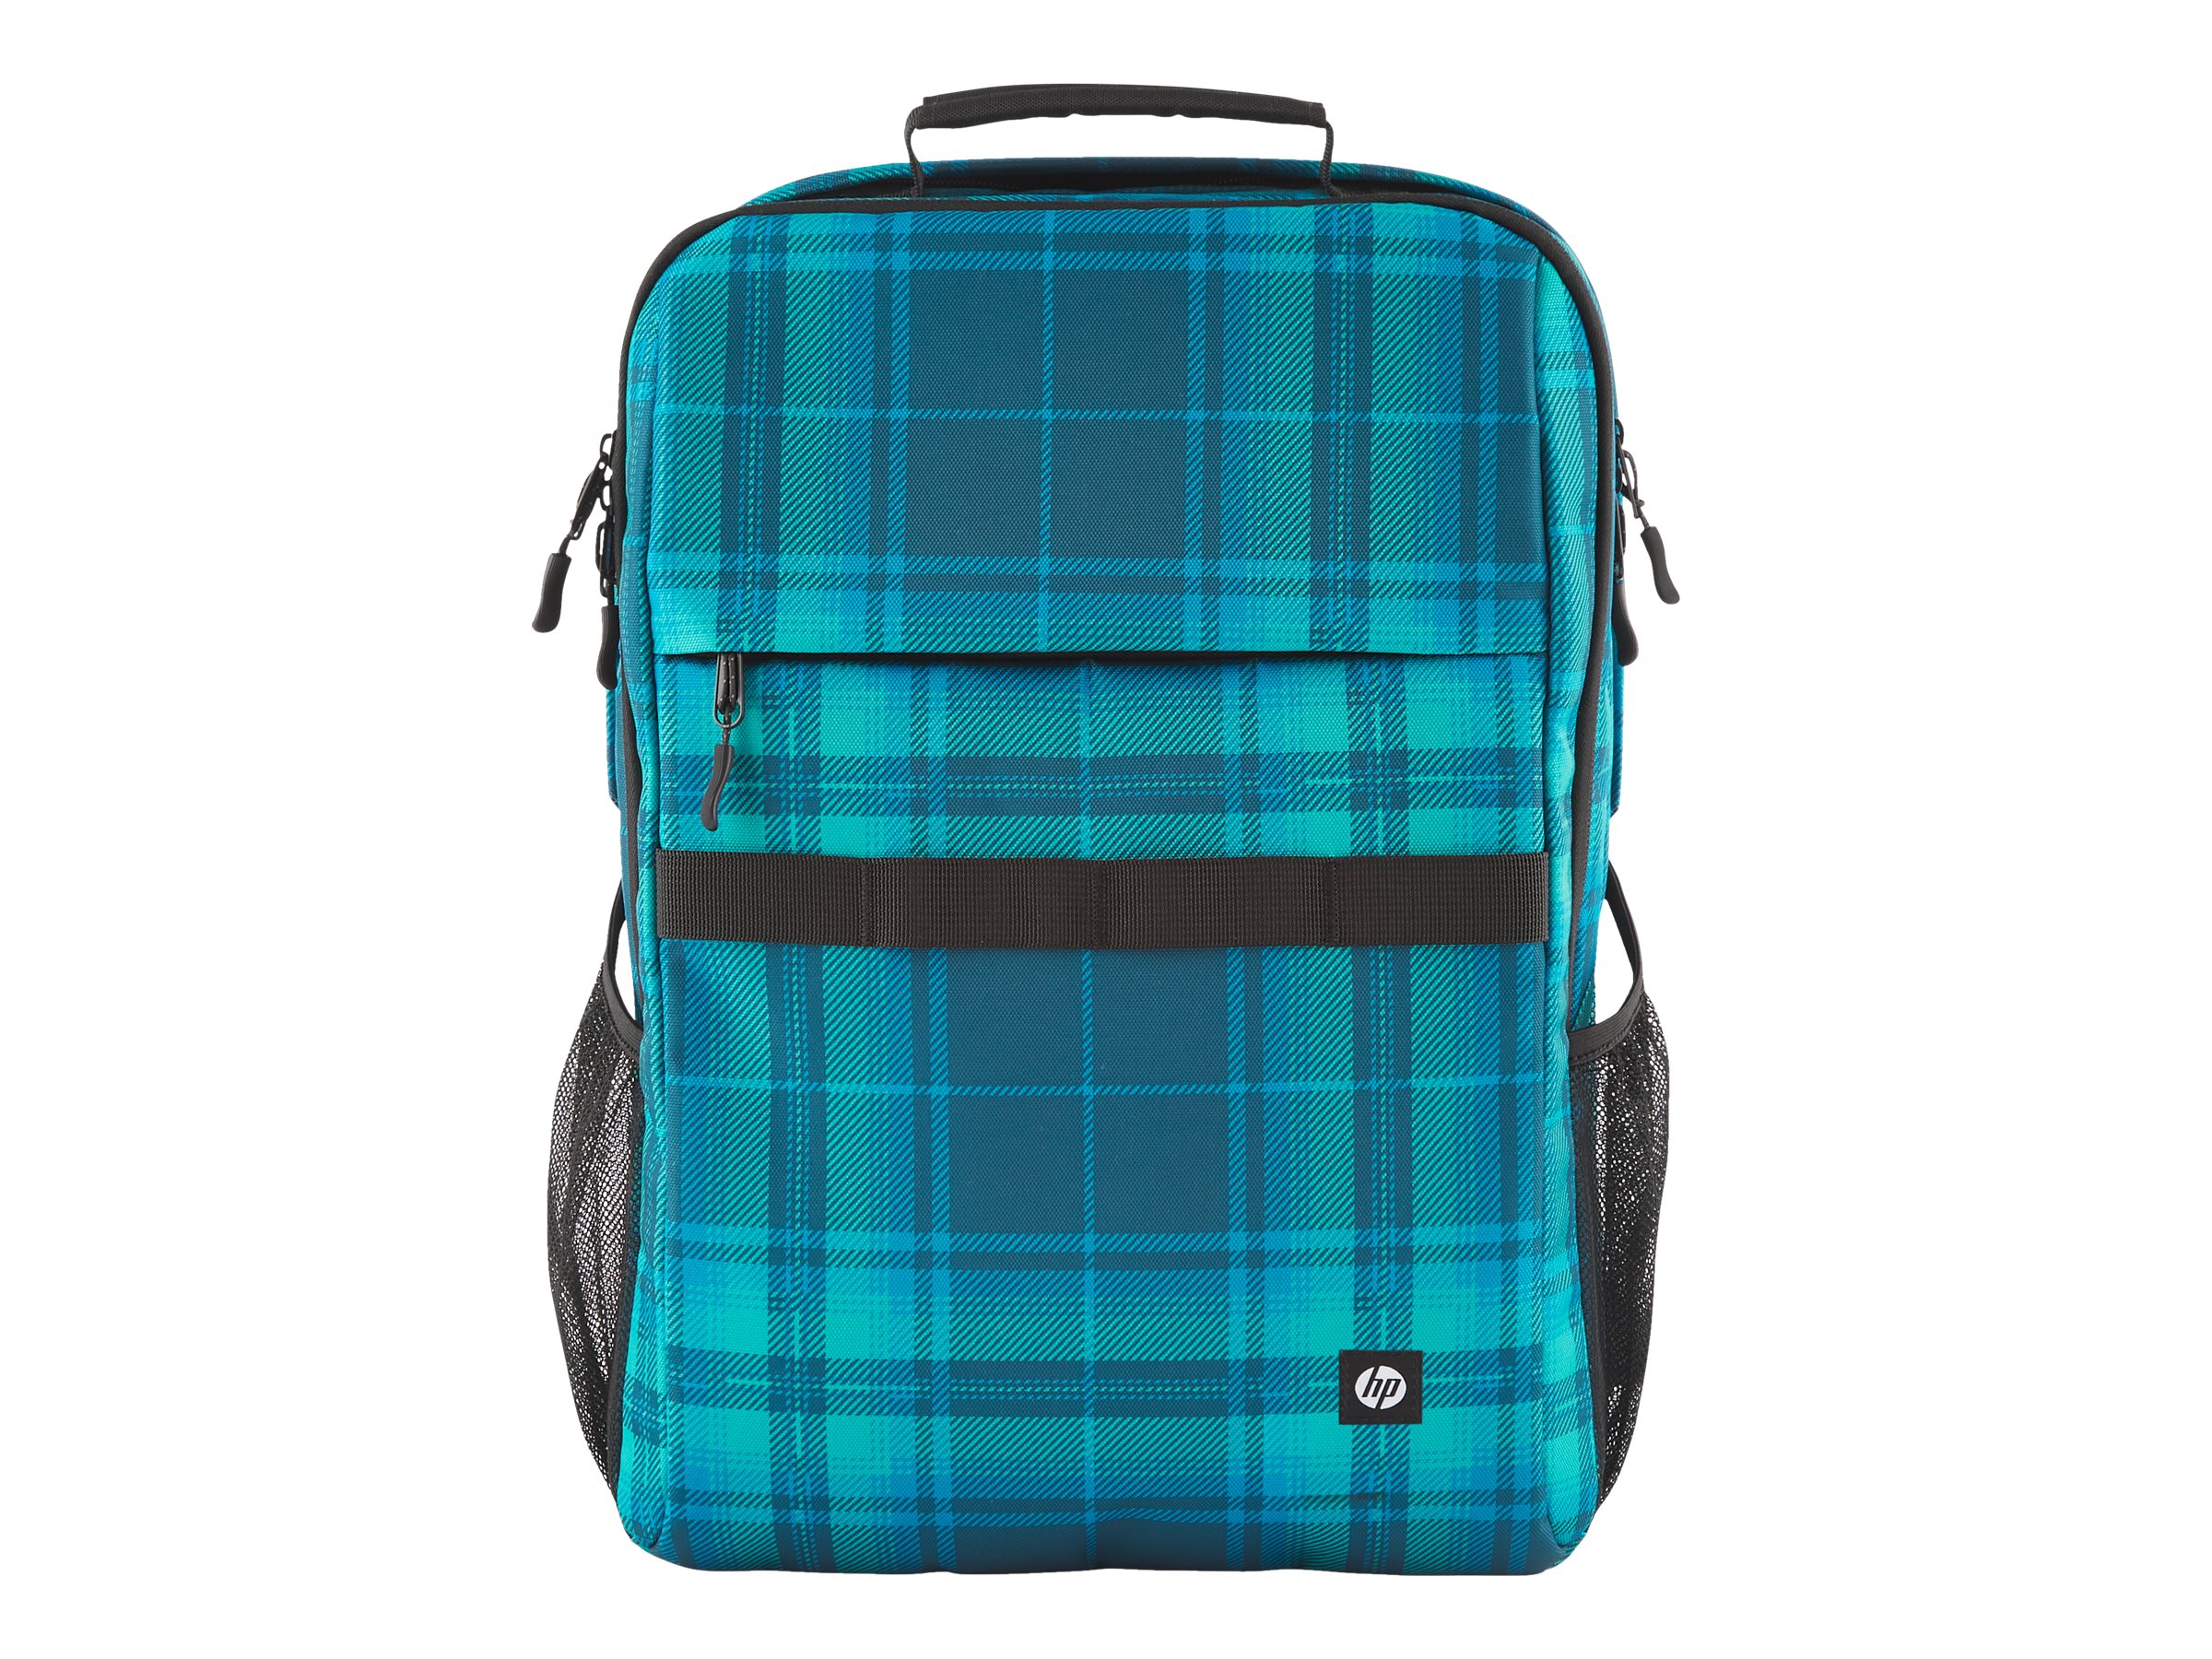 HP - Campus XL - sac à dos pour ordinateur portable - 16.1" - bleu plaid écossais - 7J594AA - Sacoches pour ordinateur portable